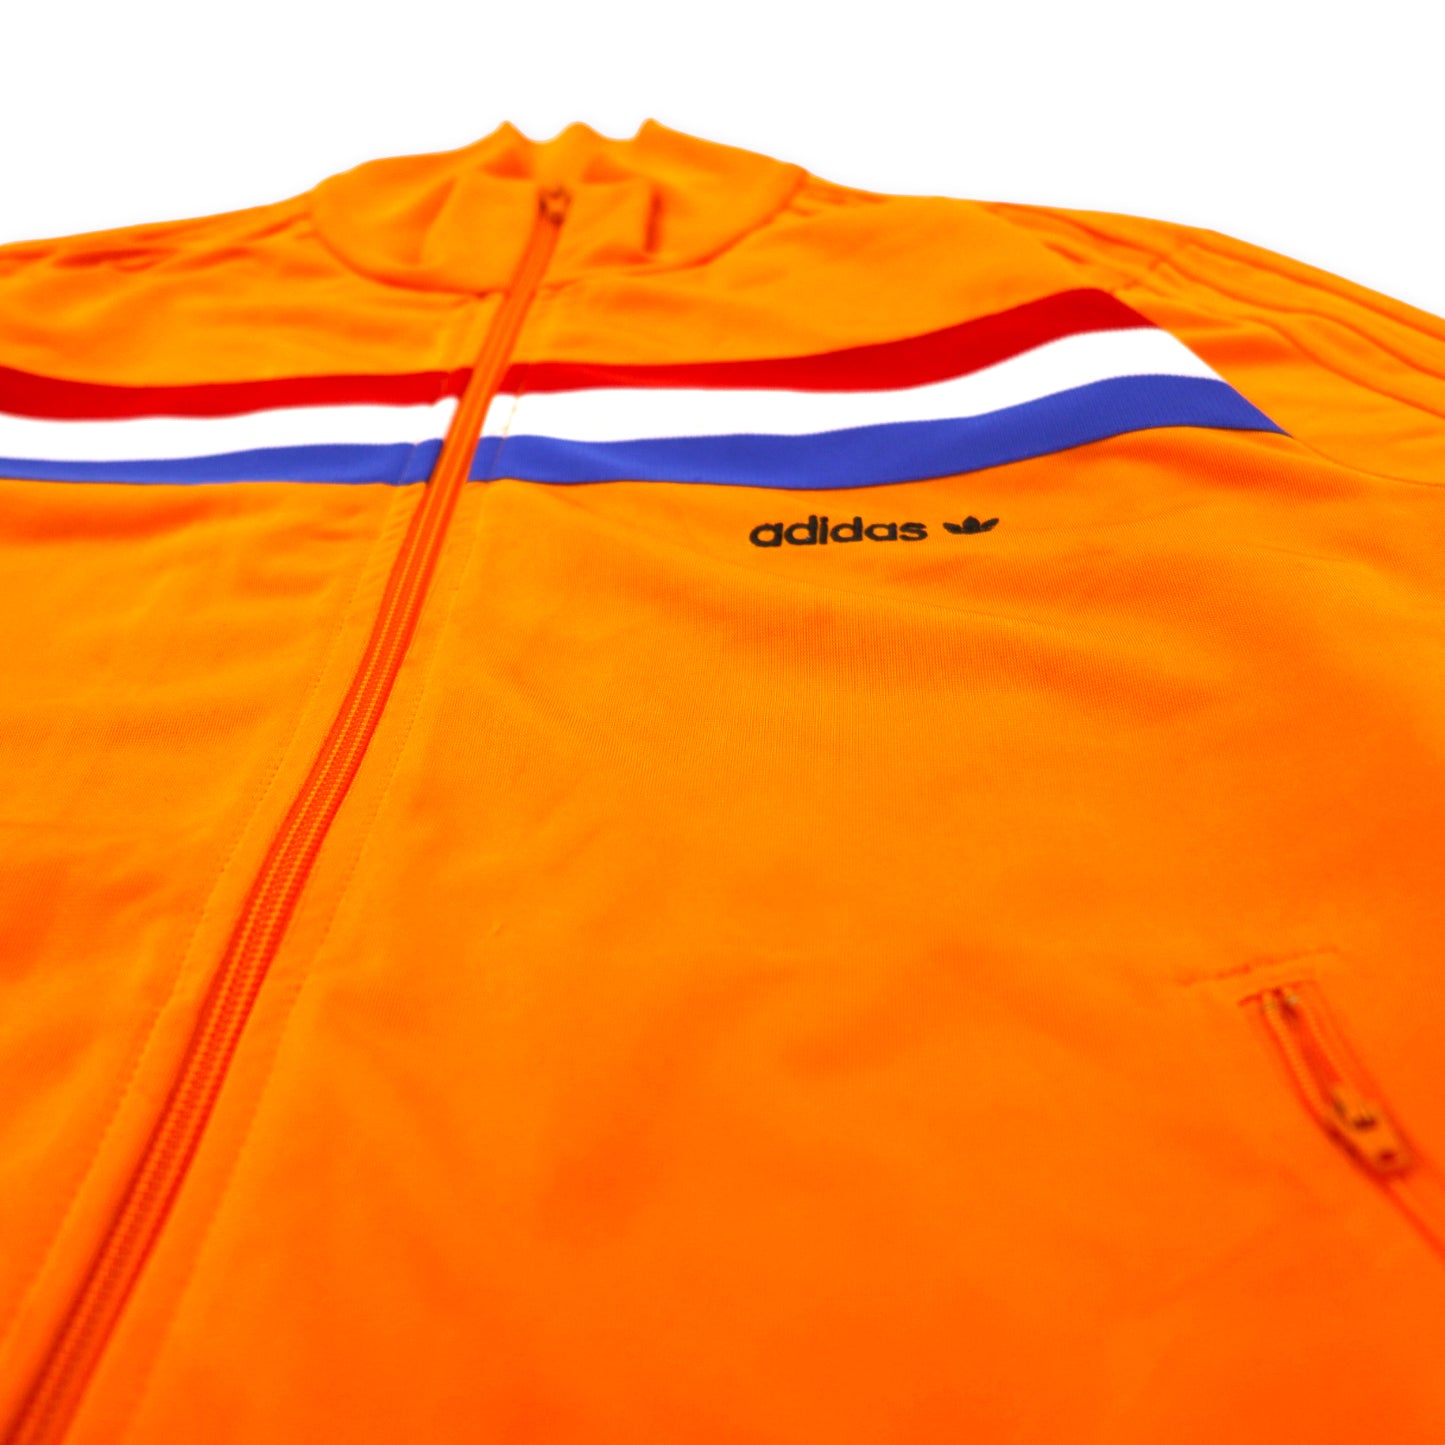 adidas originals トラックジャケット ジャージ M オレンジ トリコロール 3ストライプ トレフォイル 刺繍 1988 オランダ代表 635537